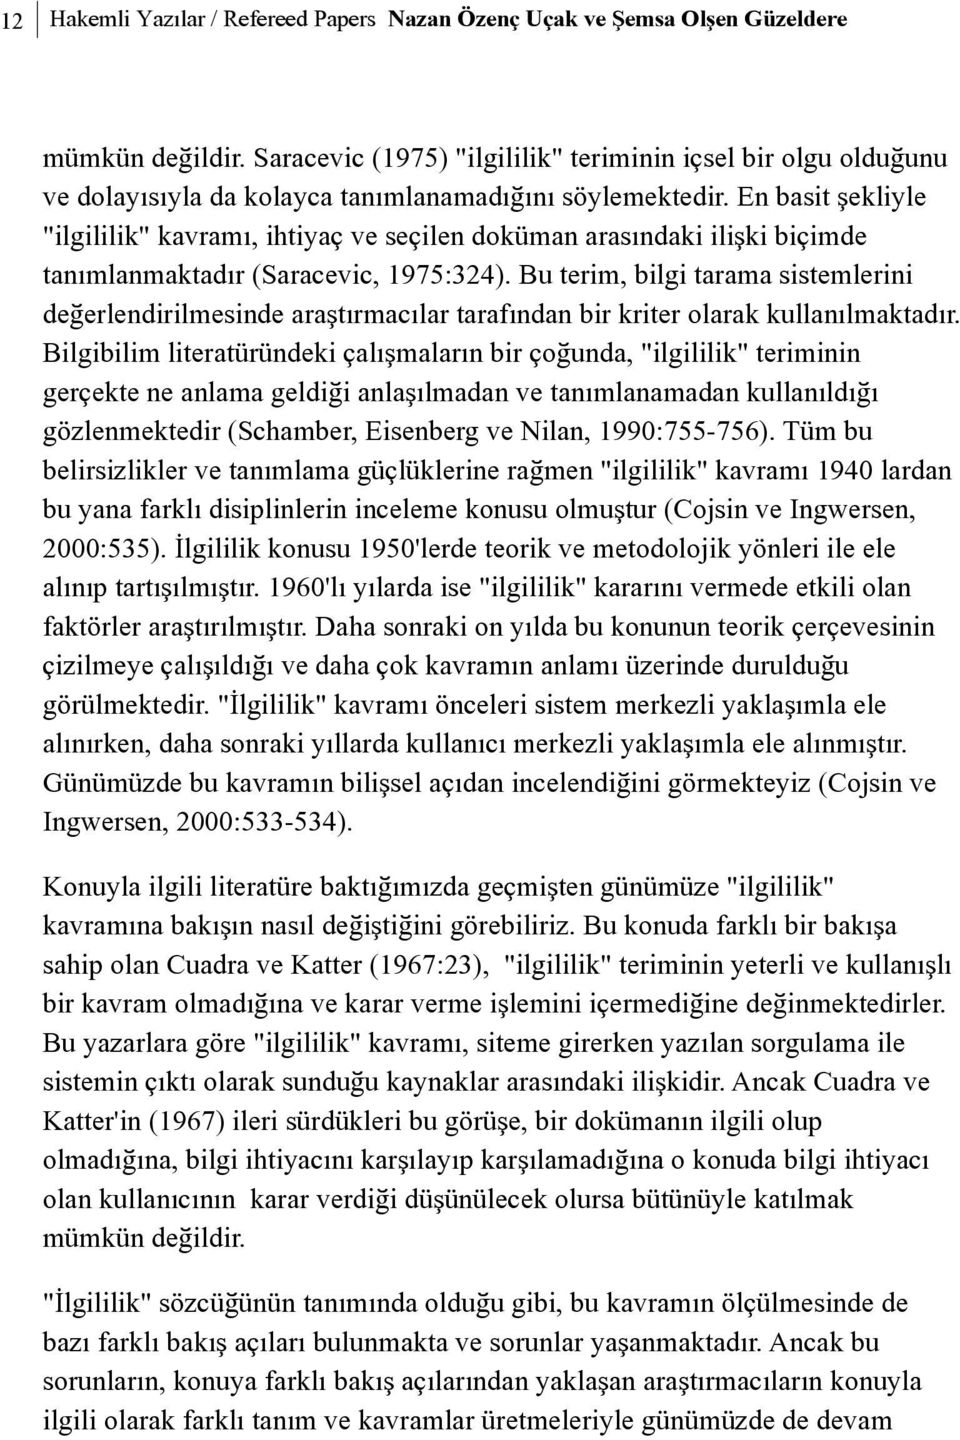 En basit þekliyle "ilgililik" kavramý, ihtiyaç ve seçilen doküman arasýndaki iliþki biçimde tanýmlanmaktadýr (Saracevic, 1975:324).